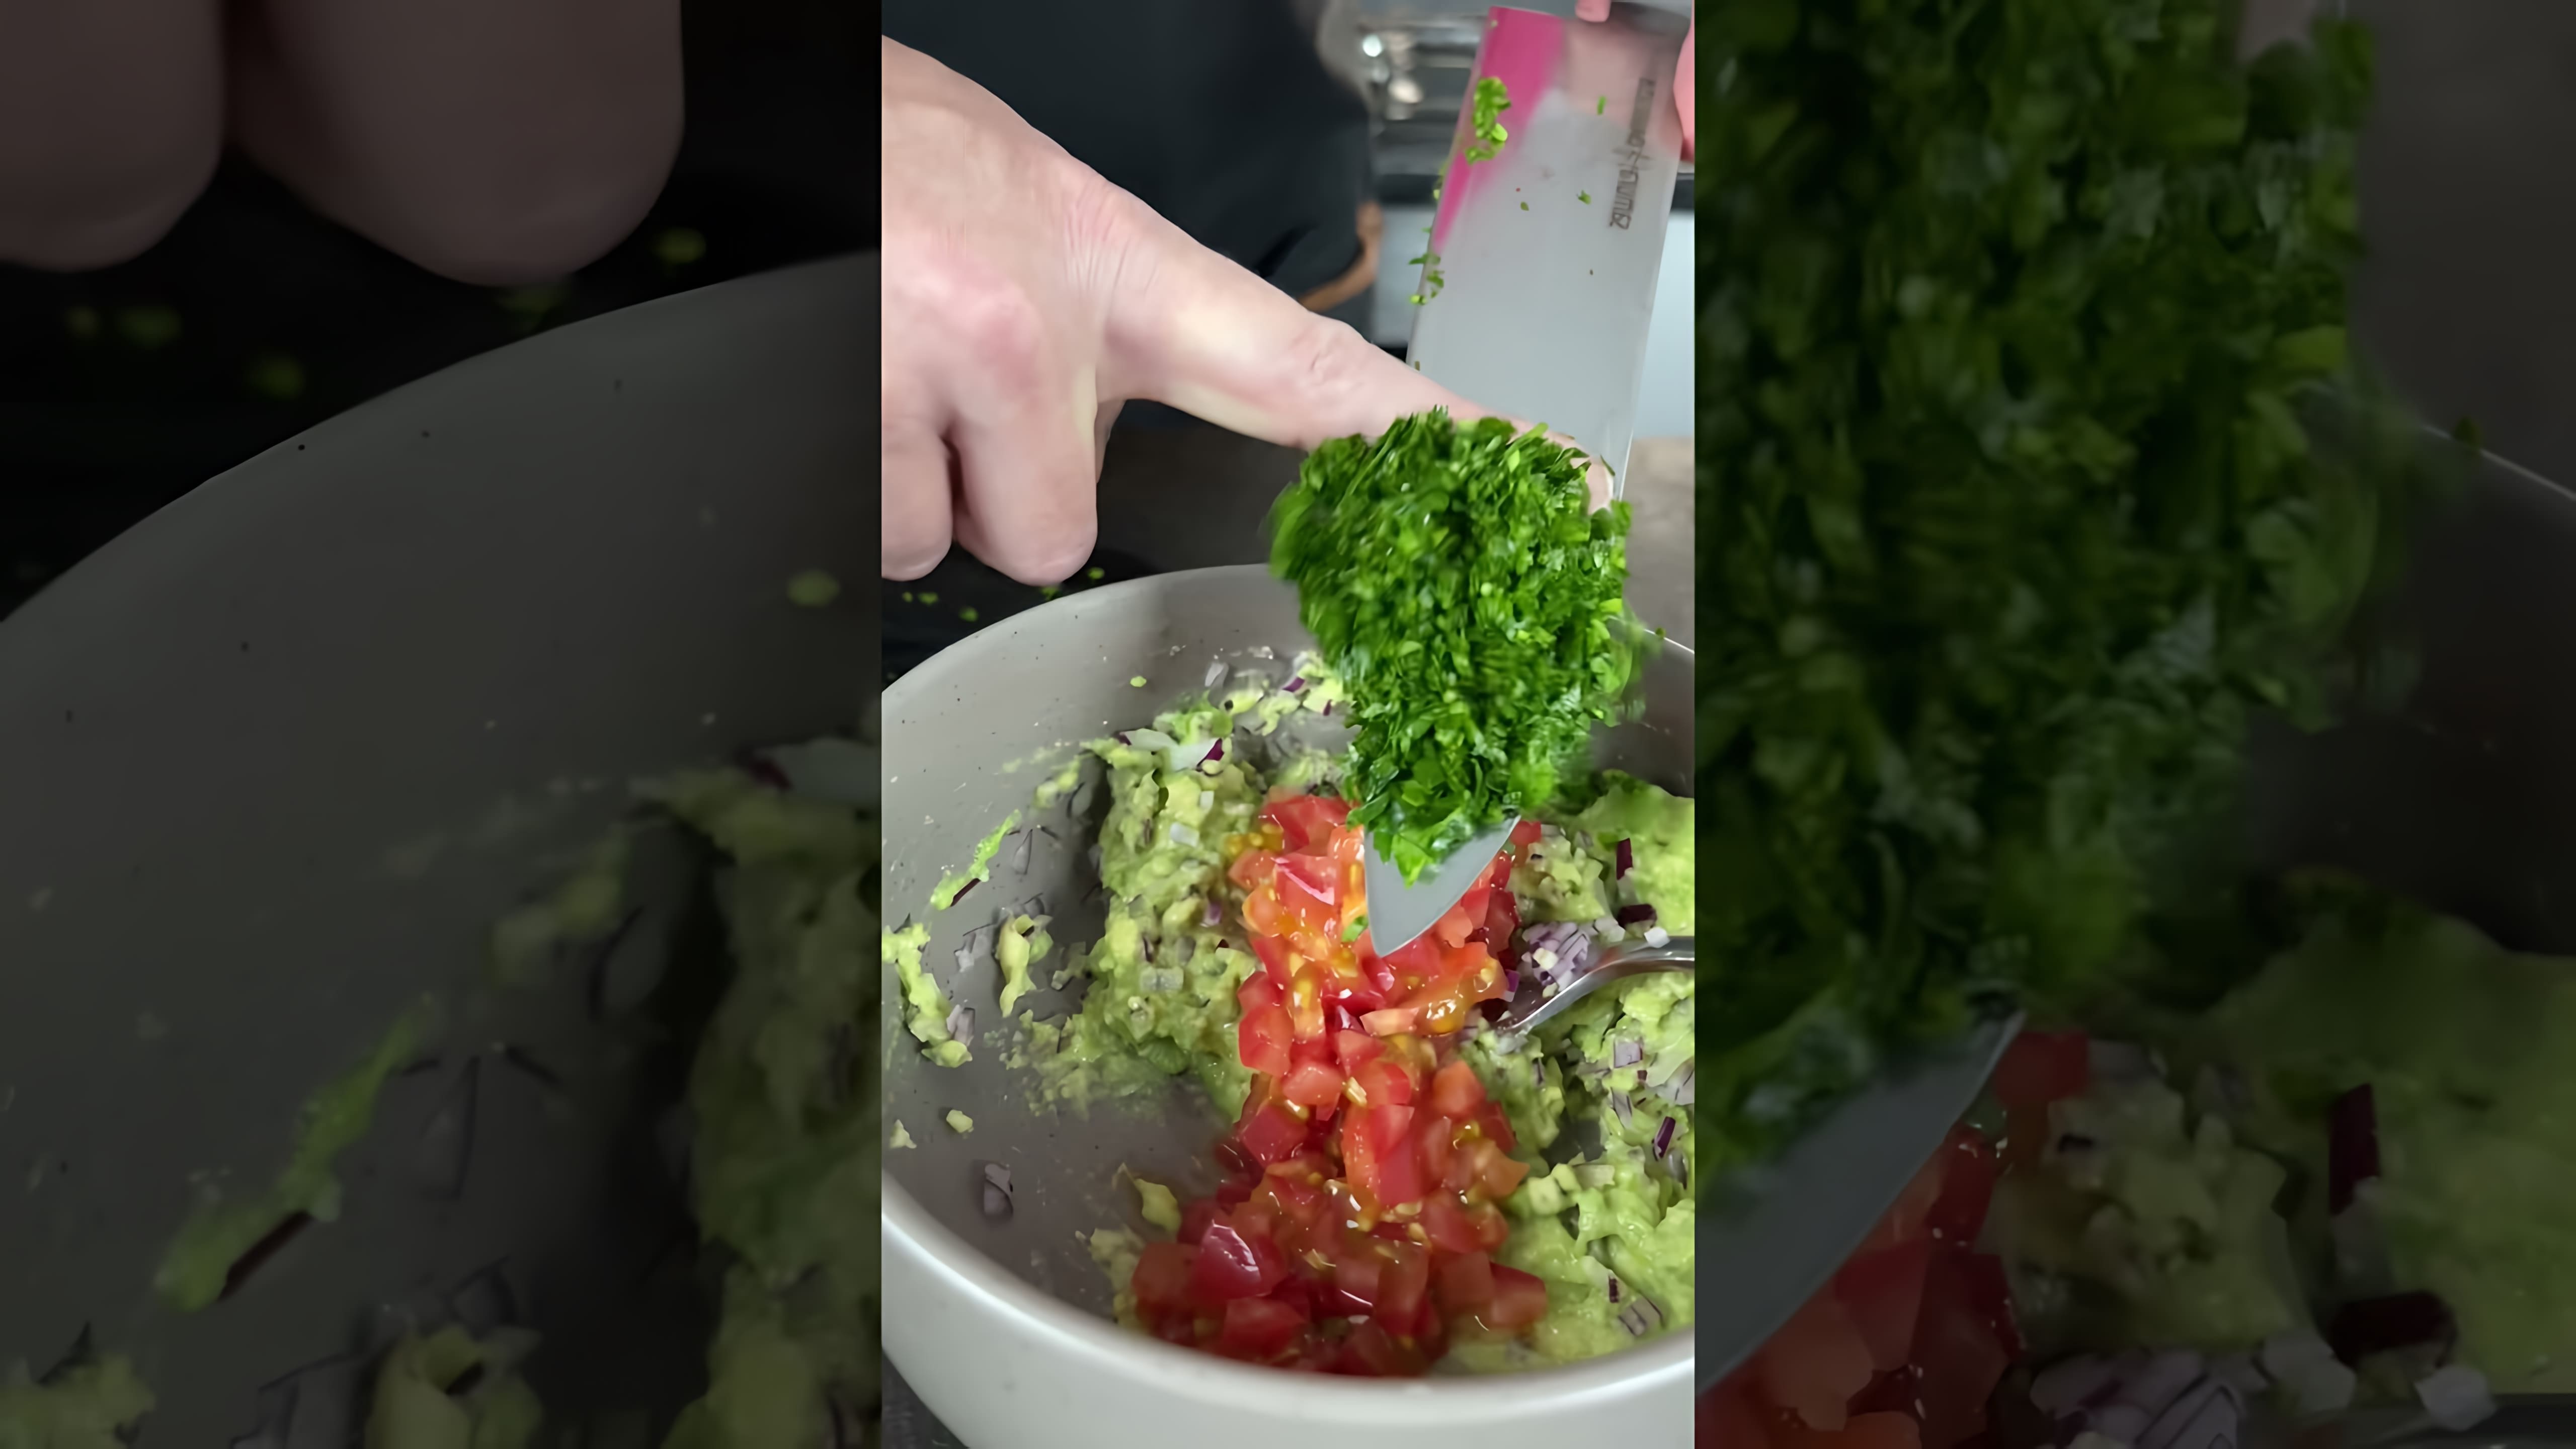 Видео-ролик с заголовком "А ты делаешь гуакамоле?" представляет собой обзор процесса приготовления популярного мексиканского соуса гуакамоле